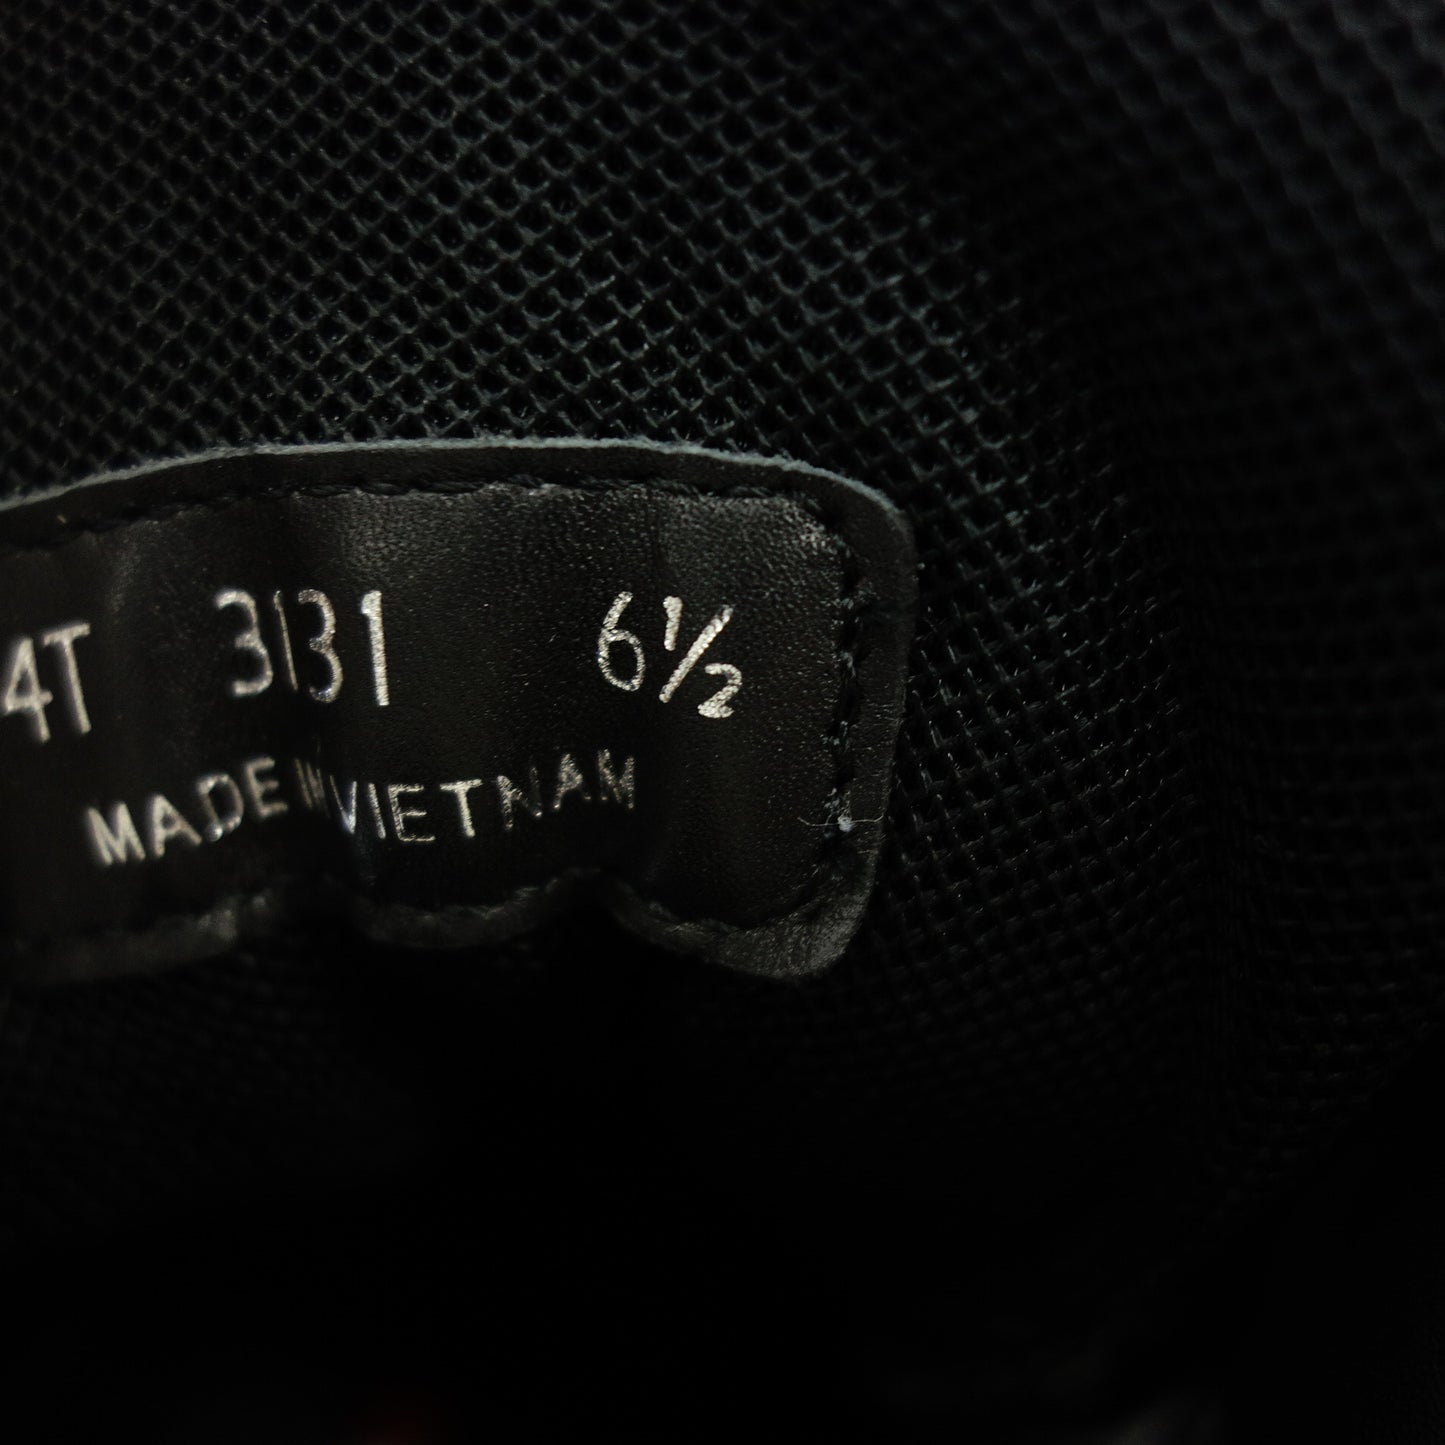 Prada high-cut sneakers leather side zip 4T3131 men's black 6.5 PRADA [AFD8] [Used] 